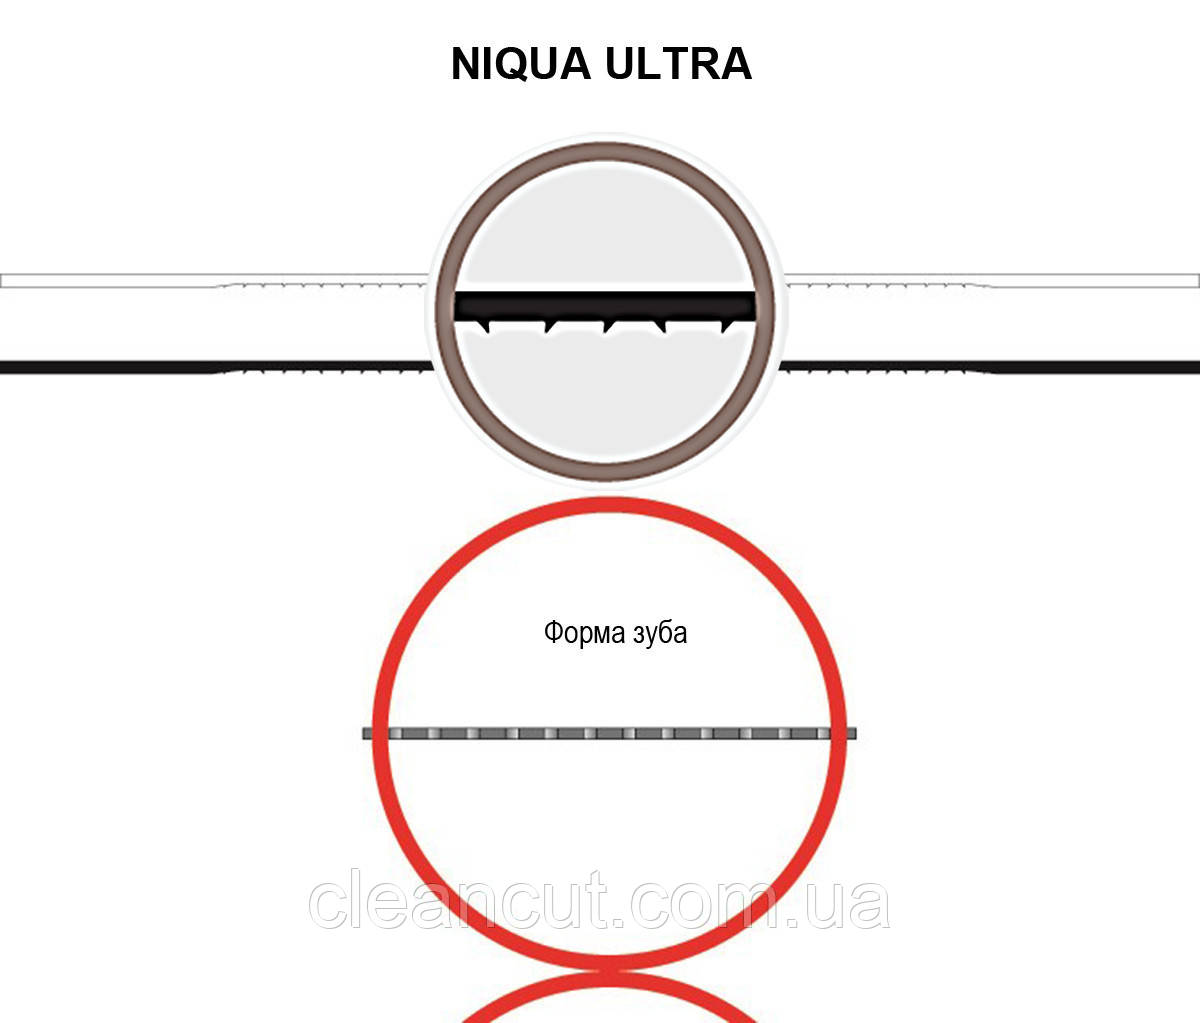 Пилка для лобзикових верстатів NIQUA ULTRA No9, комплект 6 шт.